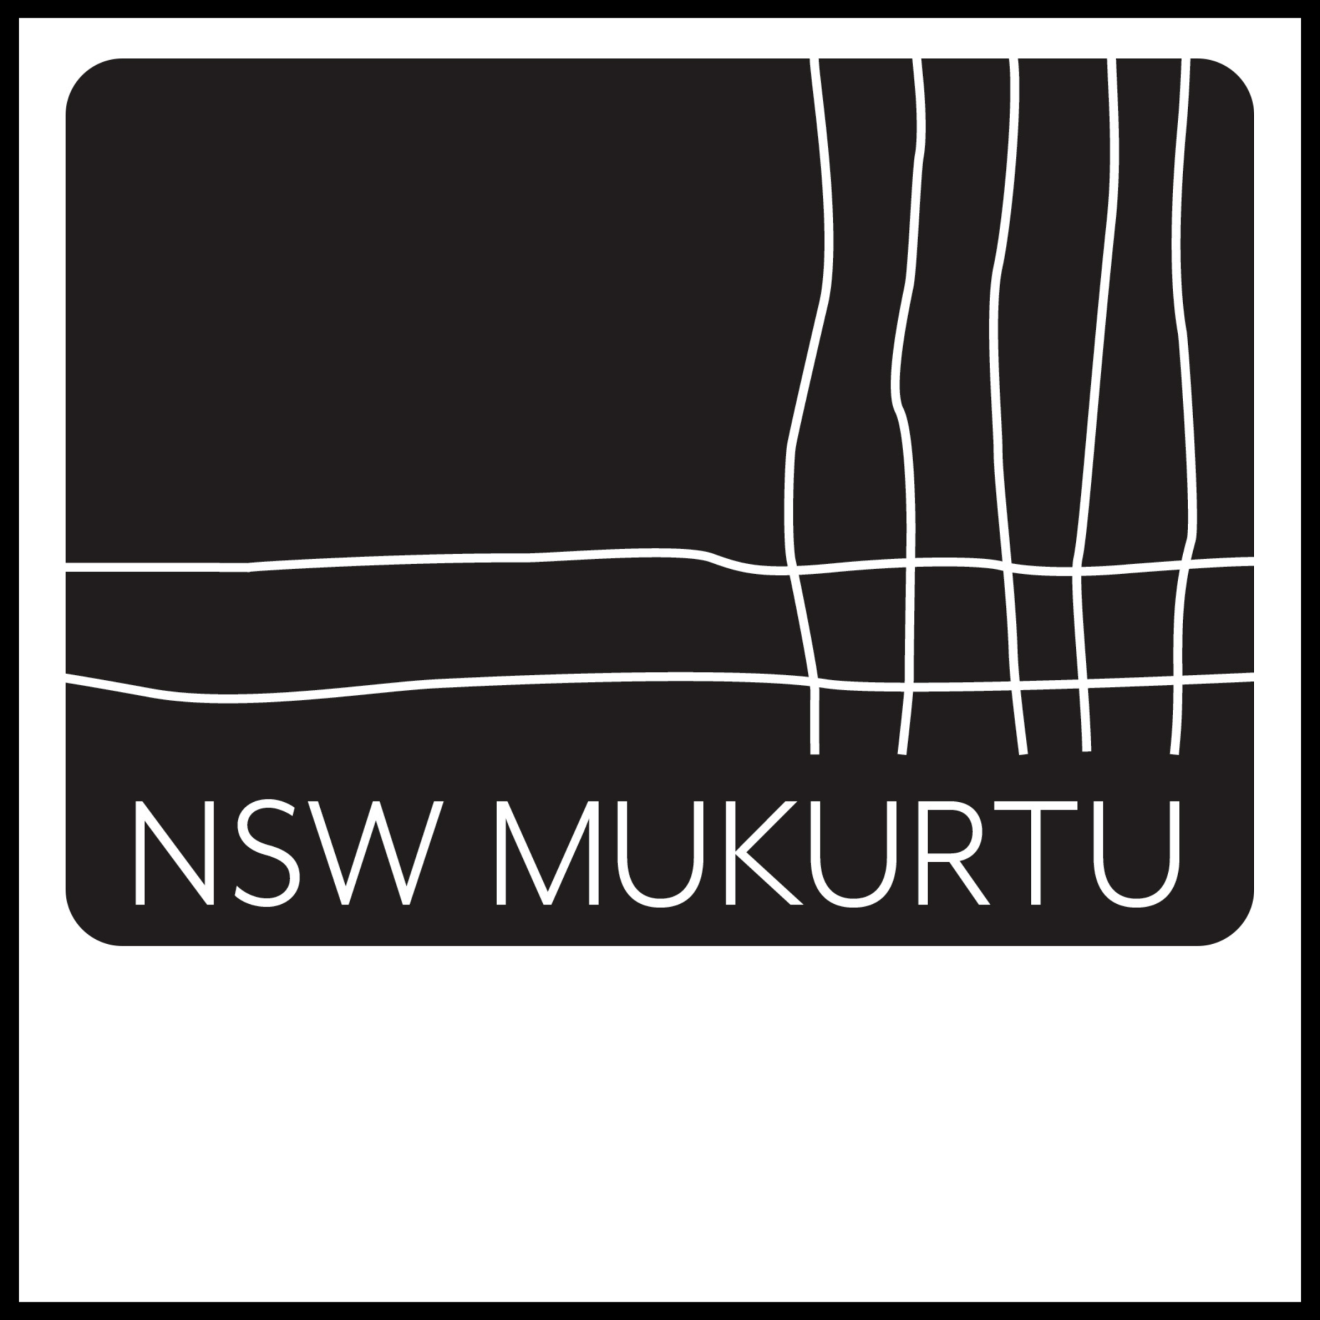 NSW Australian Mukurtu Hub